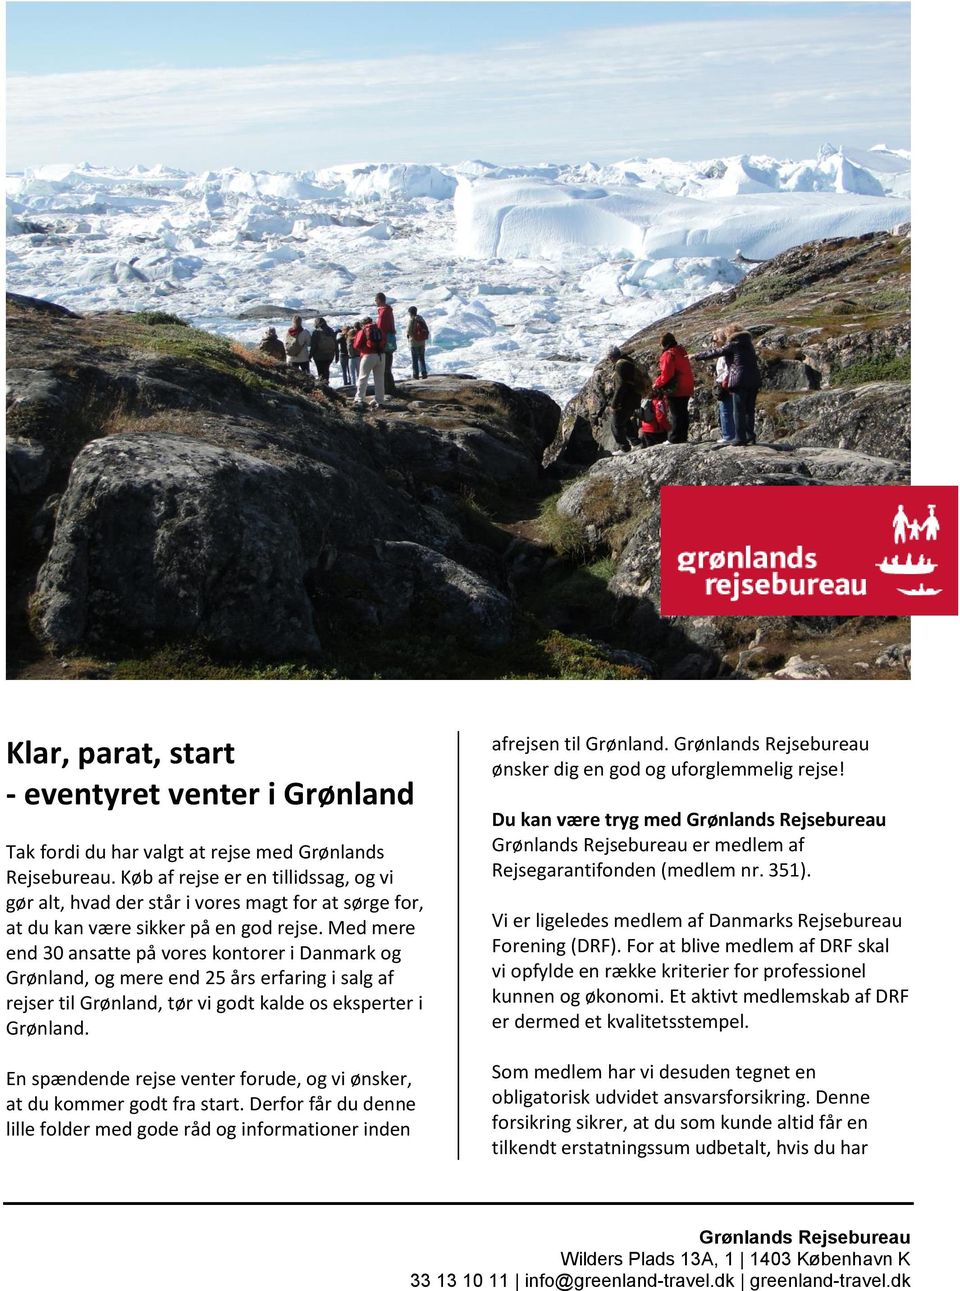 Med mere end 30 ansatte på vores kontorer i Danmark og Grønland, og mere end 25 års erfaring i salg af rejser til Grønland, tør vi godt kalde os eksperter i Grønland.